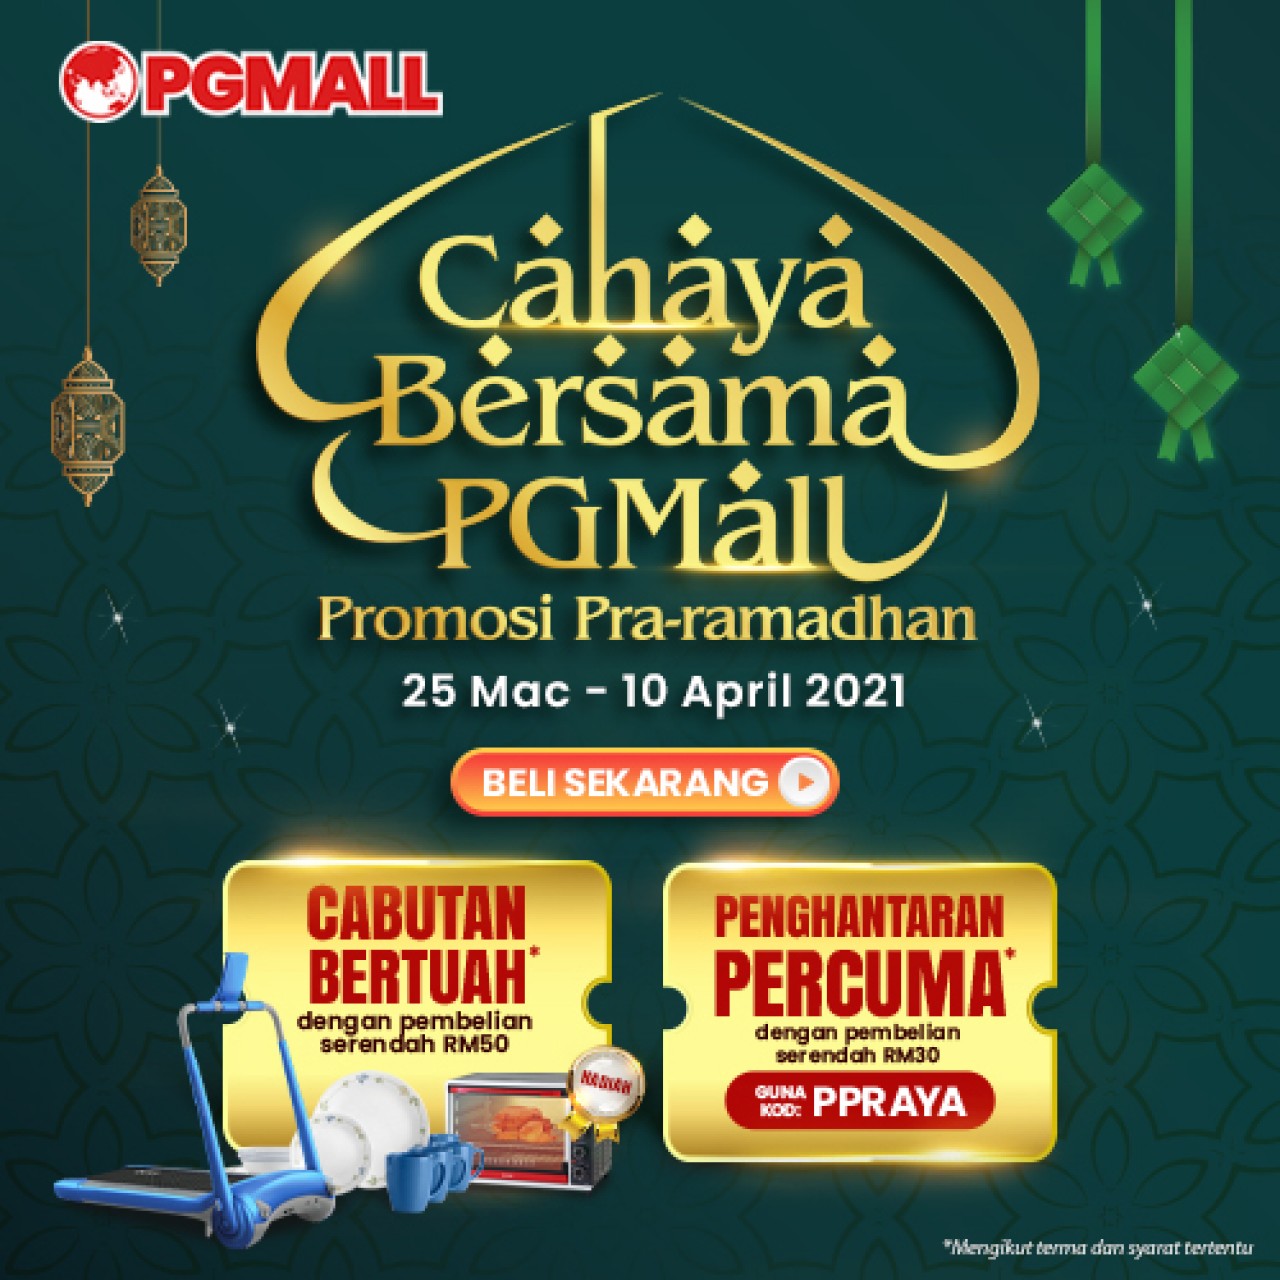 Promosi Pra-Ramadhan PGMALL